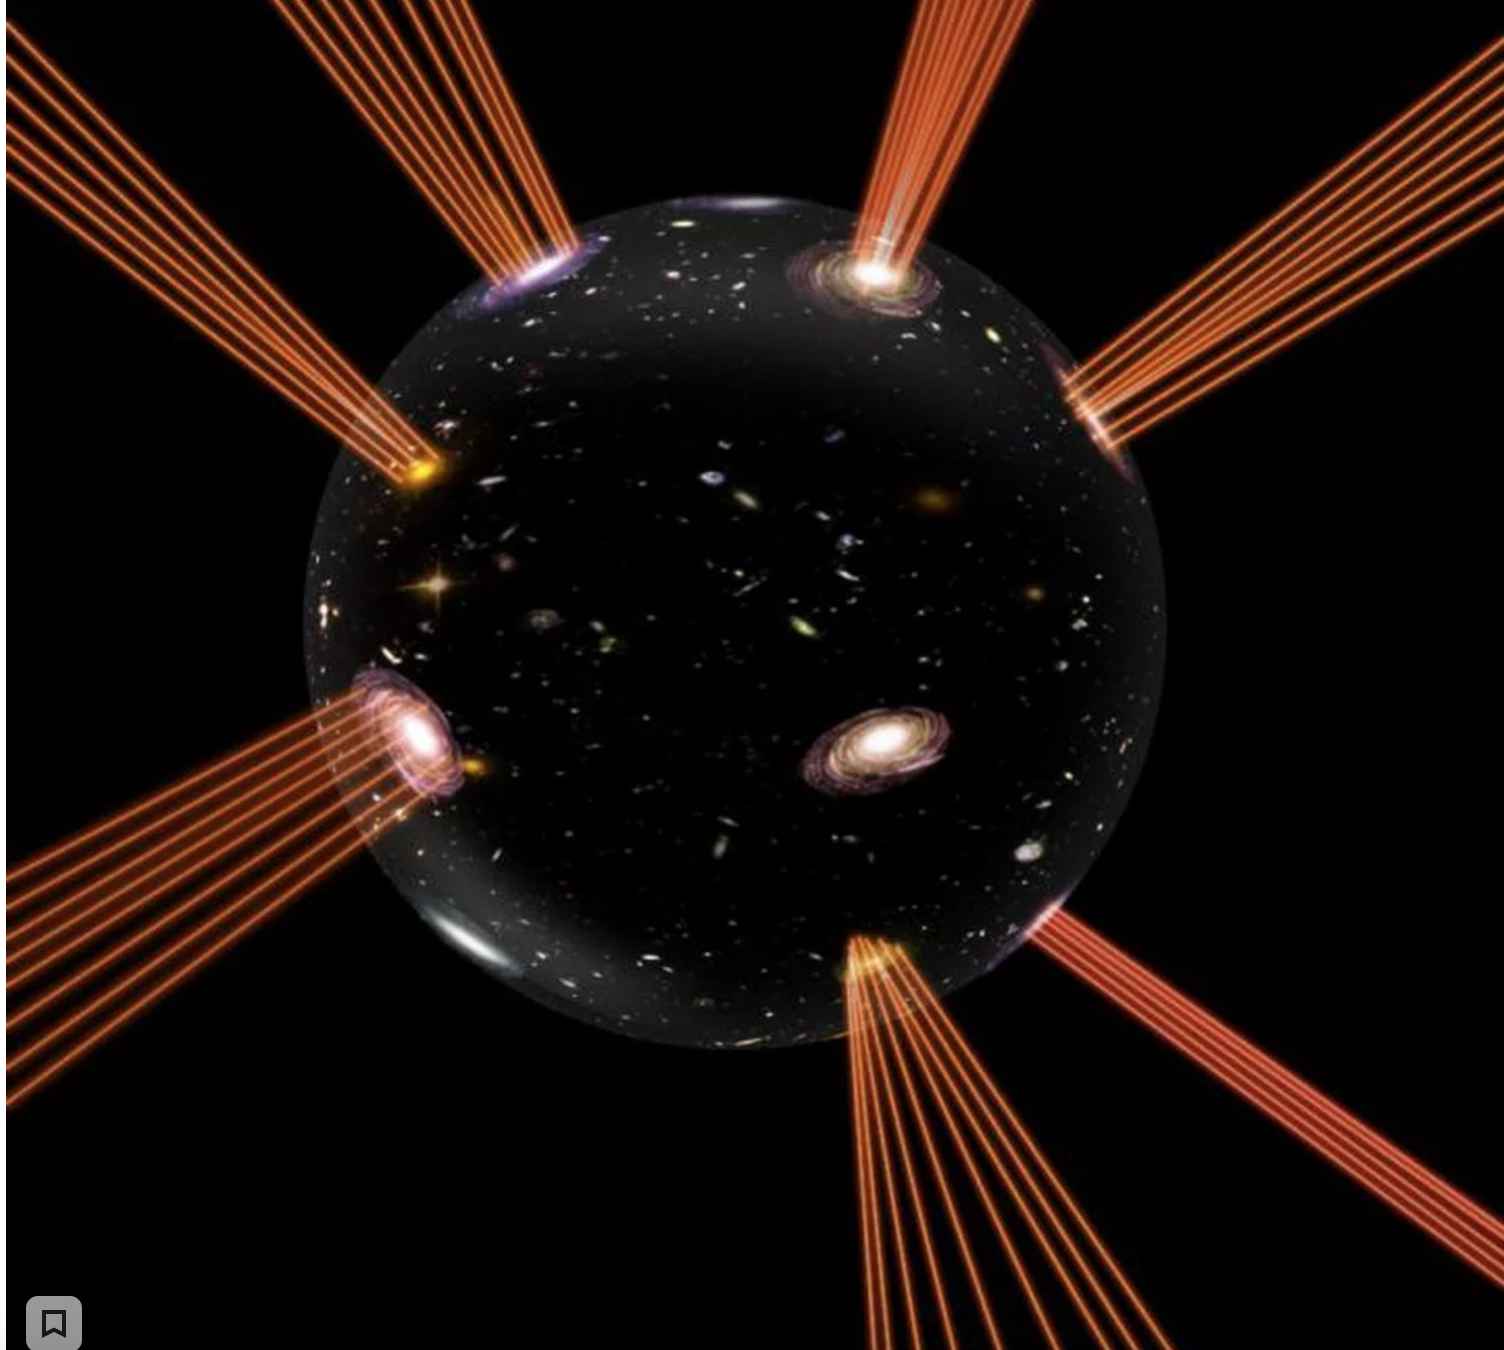 Предложена новая модель расширения Вселенной, объясняющая темную энергию